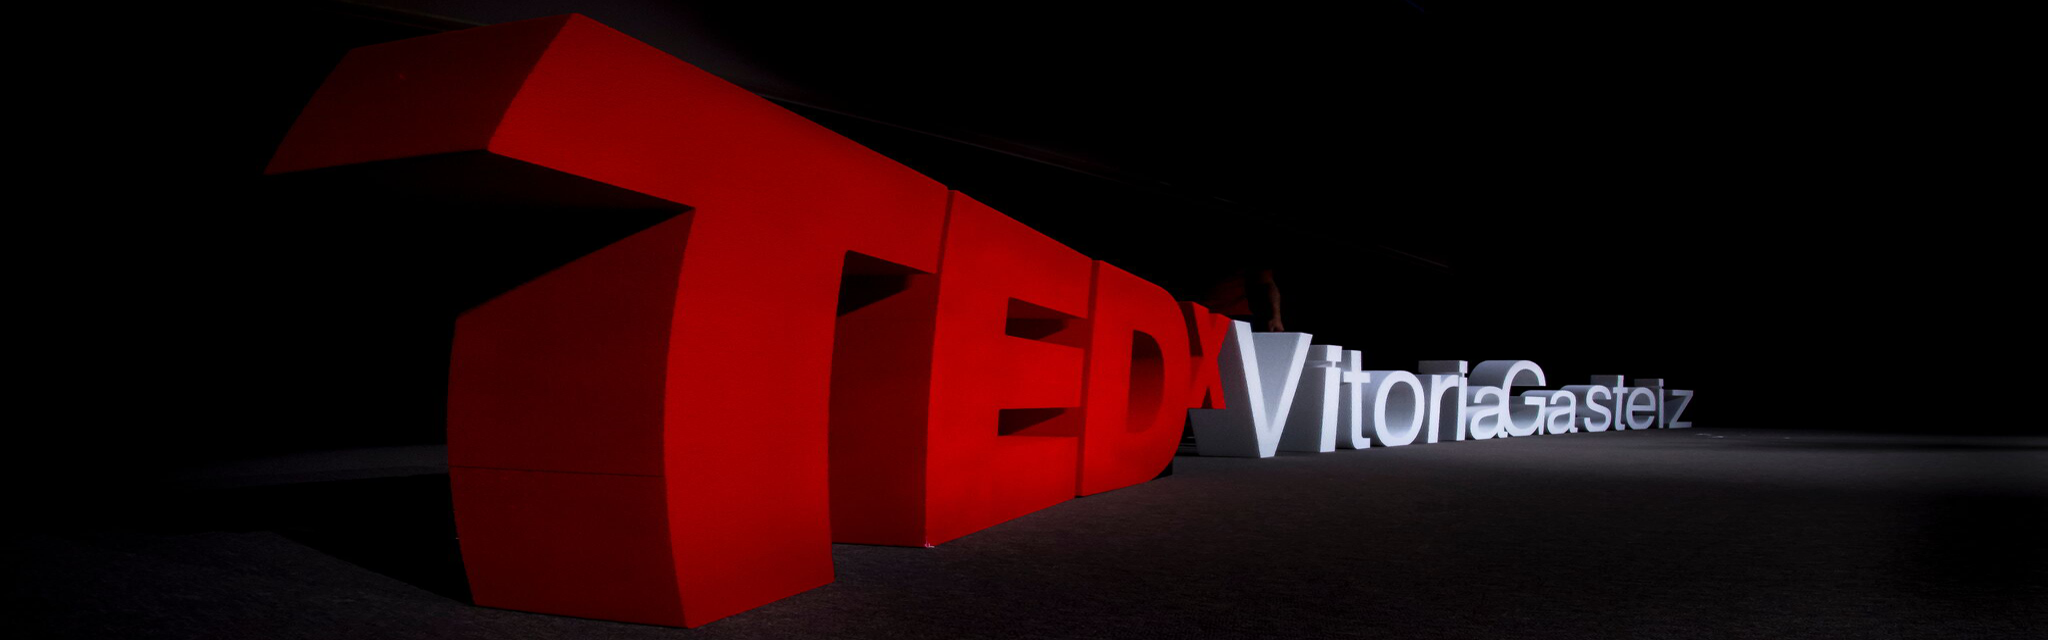 TEDXVitoriaGasteiz